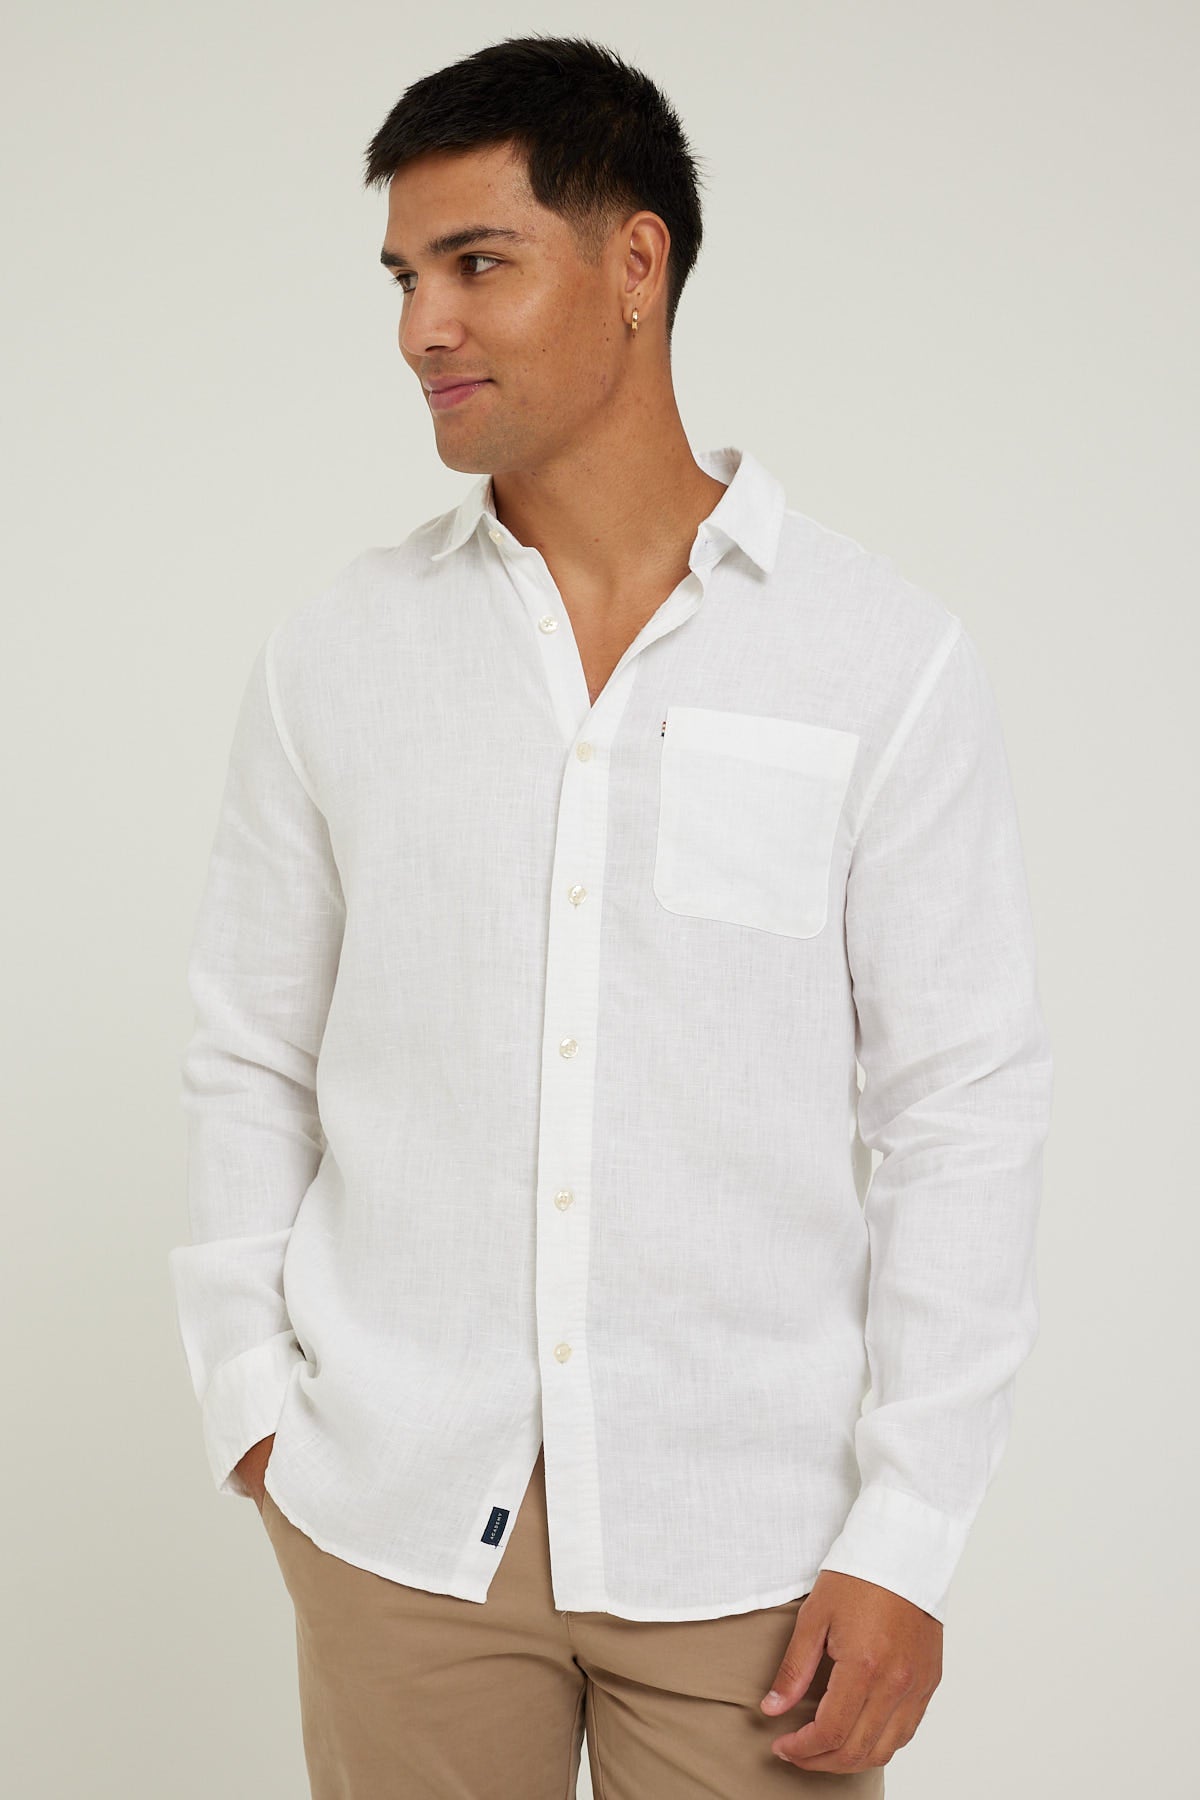 Academy Brand Hampton LS Shirt White – Universal Store